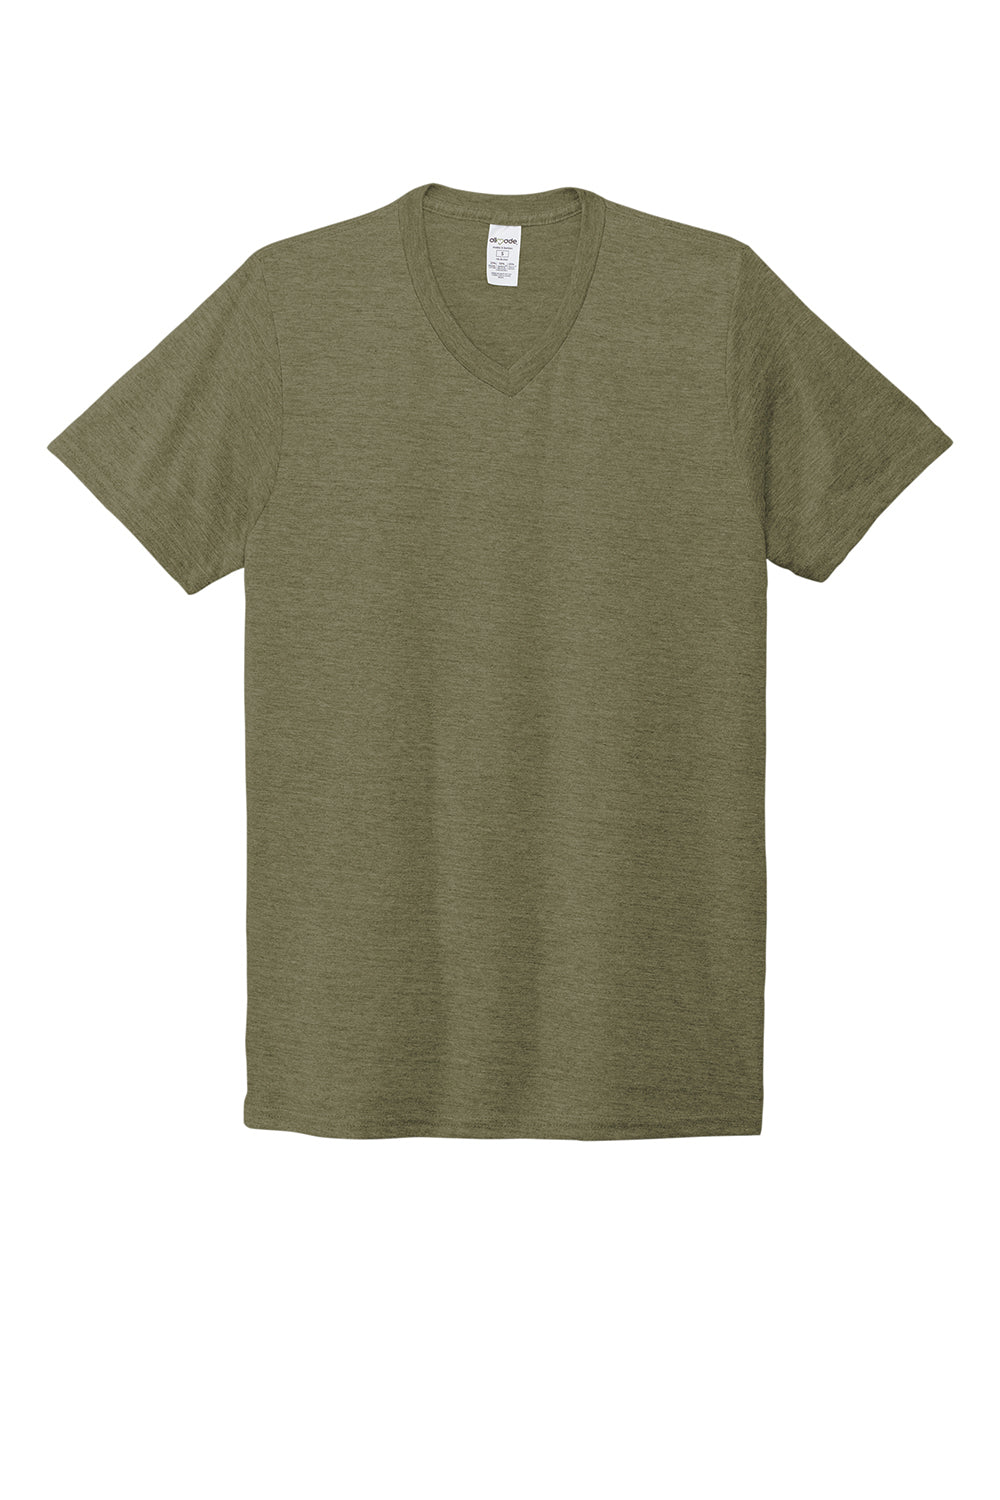 Allmade AL2014 Mens Short Sleeve V-Neck T-Shirt Olive You Green Flat Front